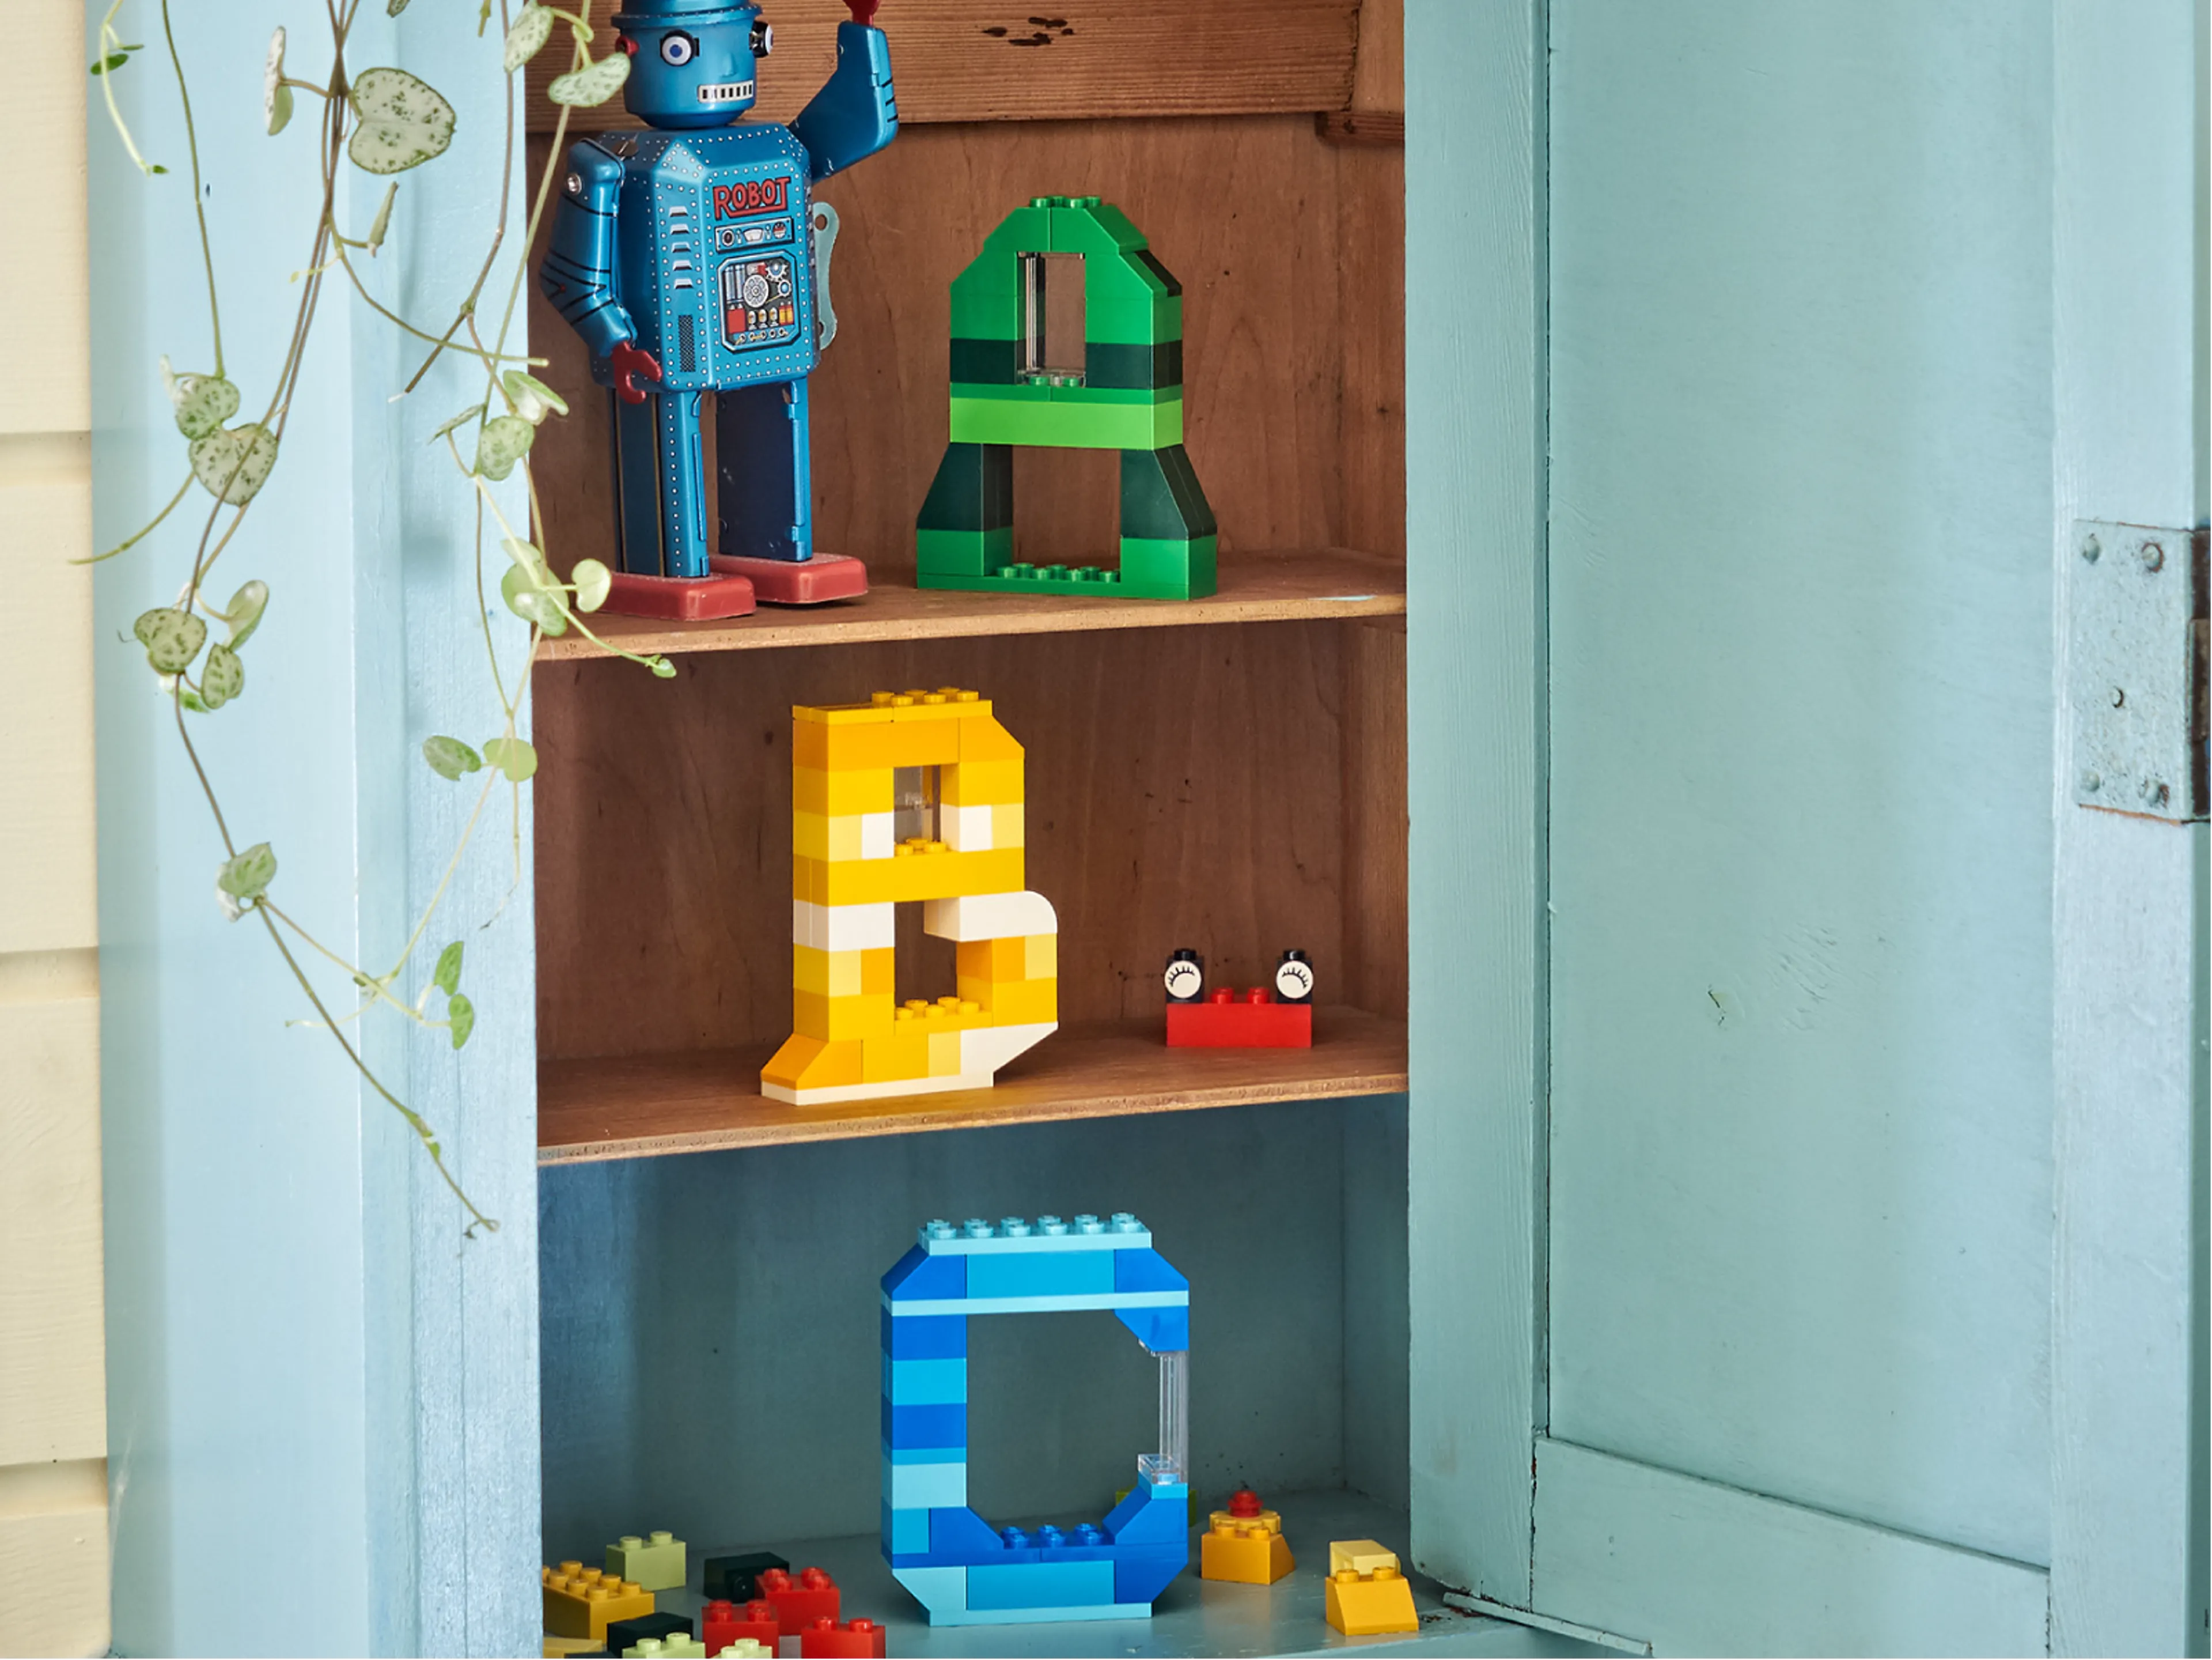 Apprendre par le jeu… Les Conjugaisons avec des briques Lego